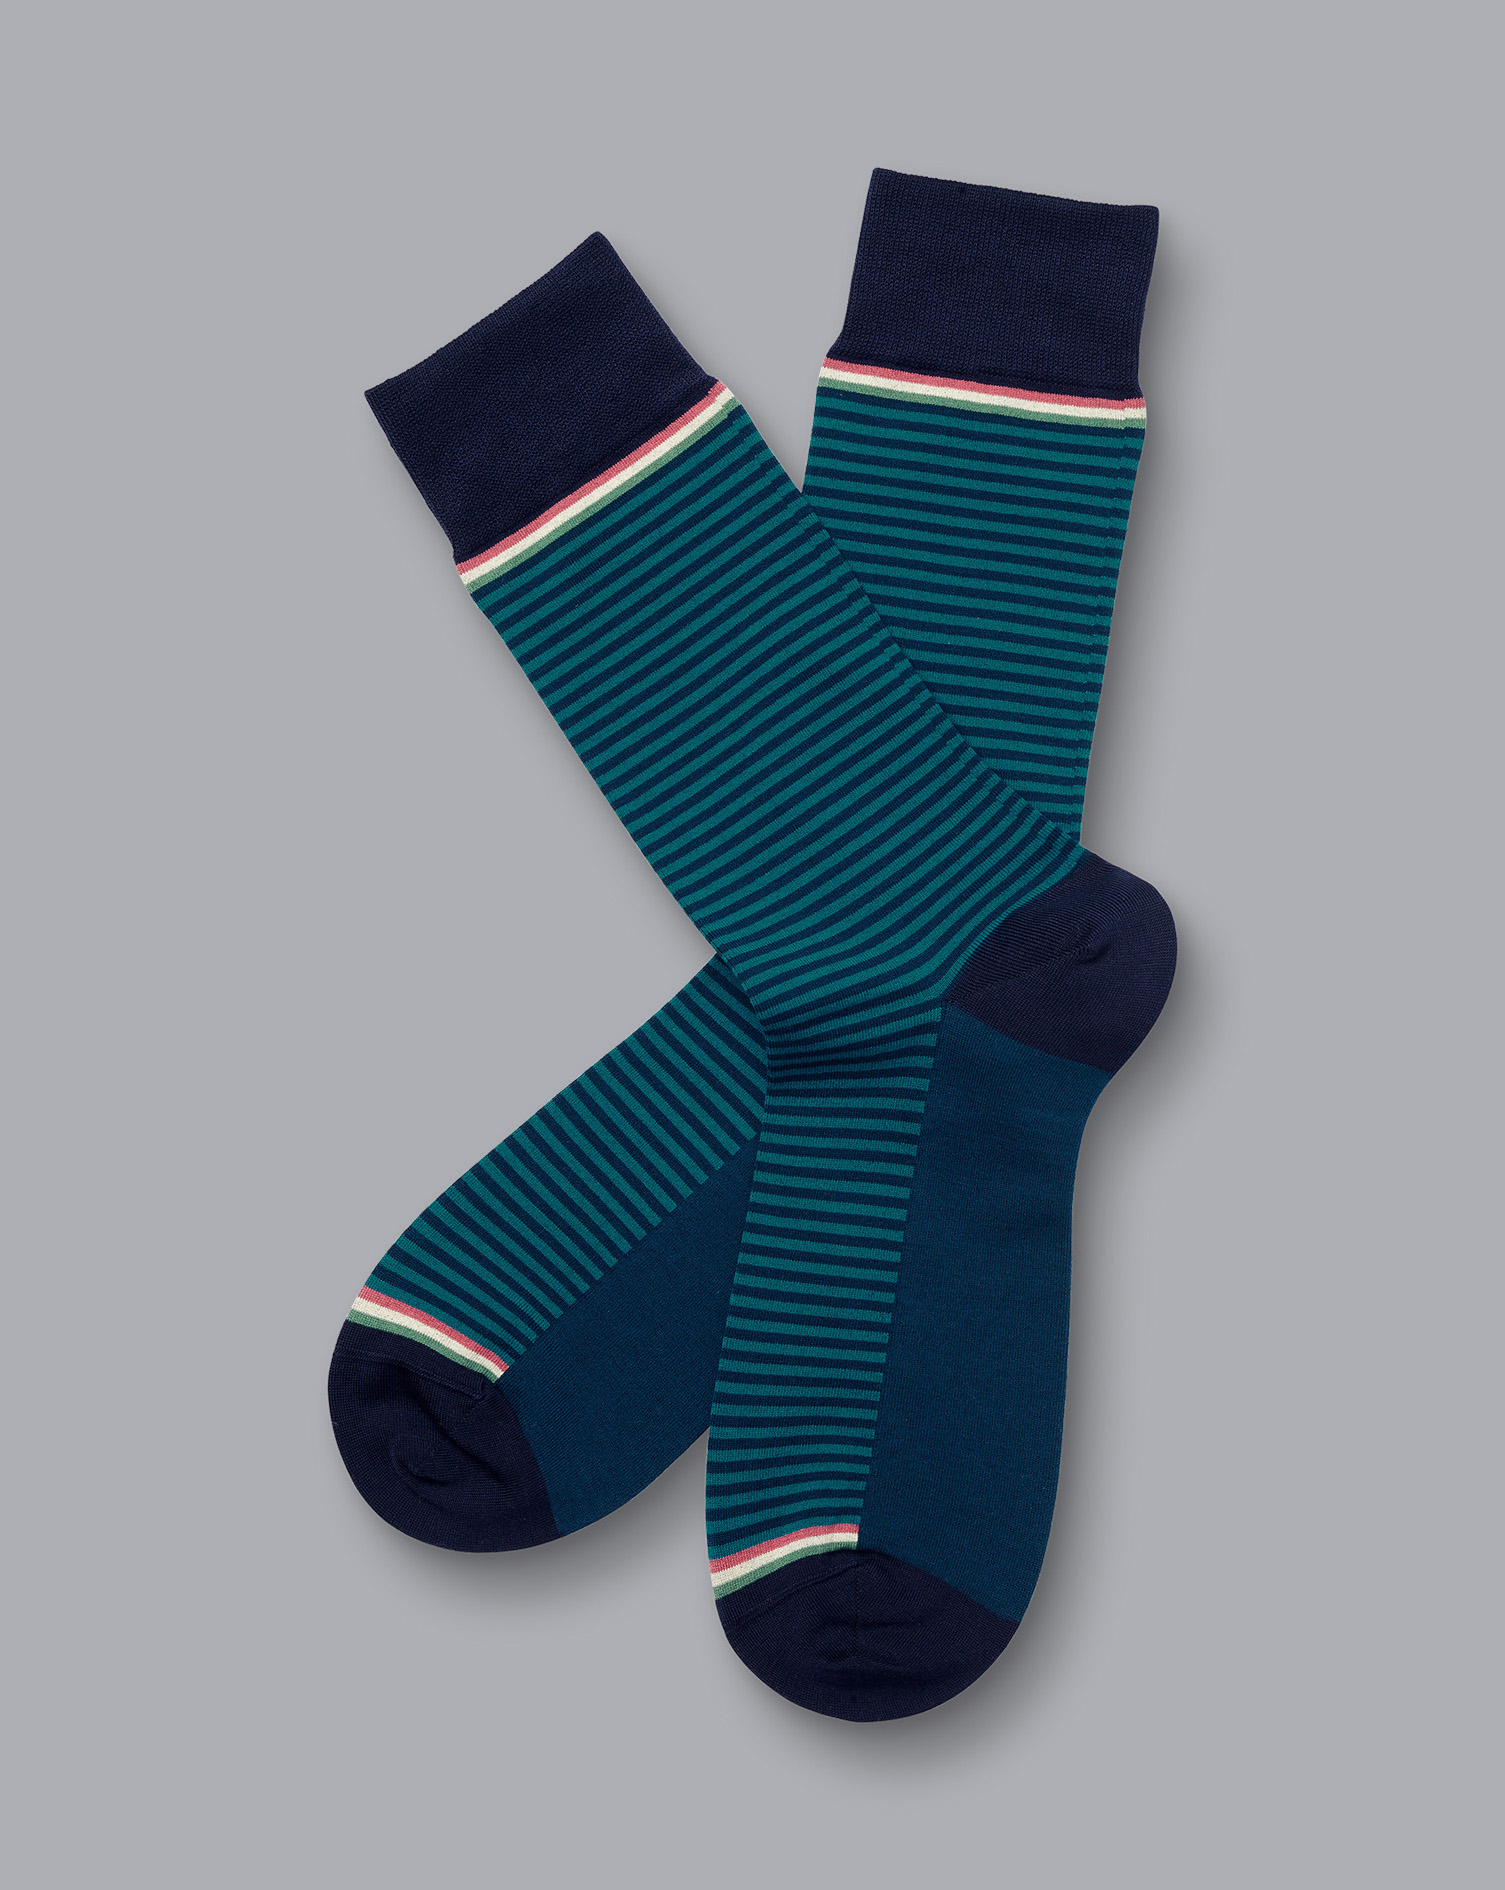 Men's Charles Tyrwhitt Fine Stripe Socks - Teal Green & Navy Size 10.5-13
